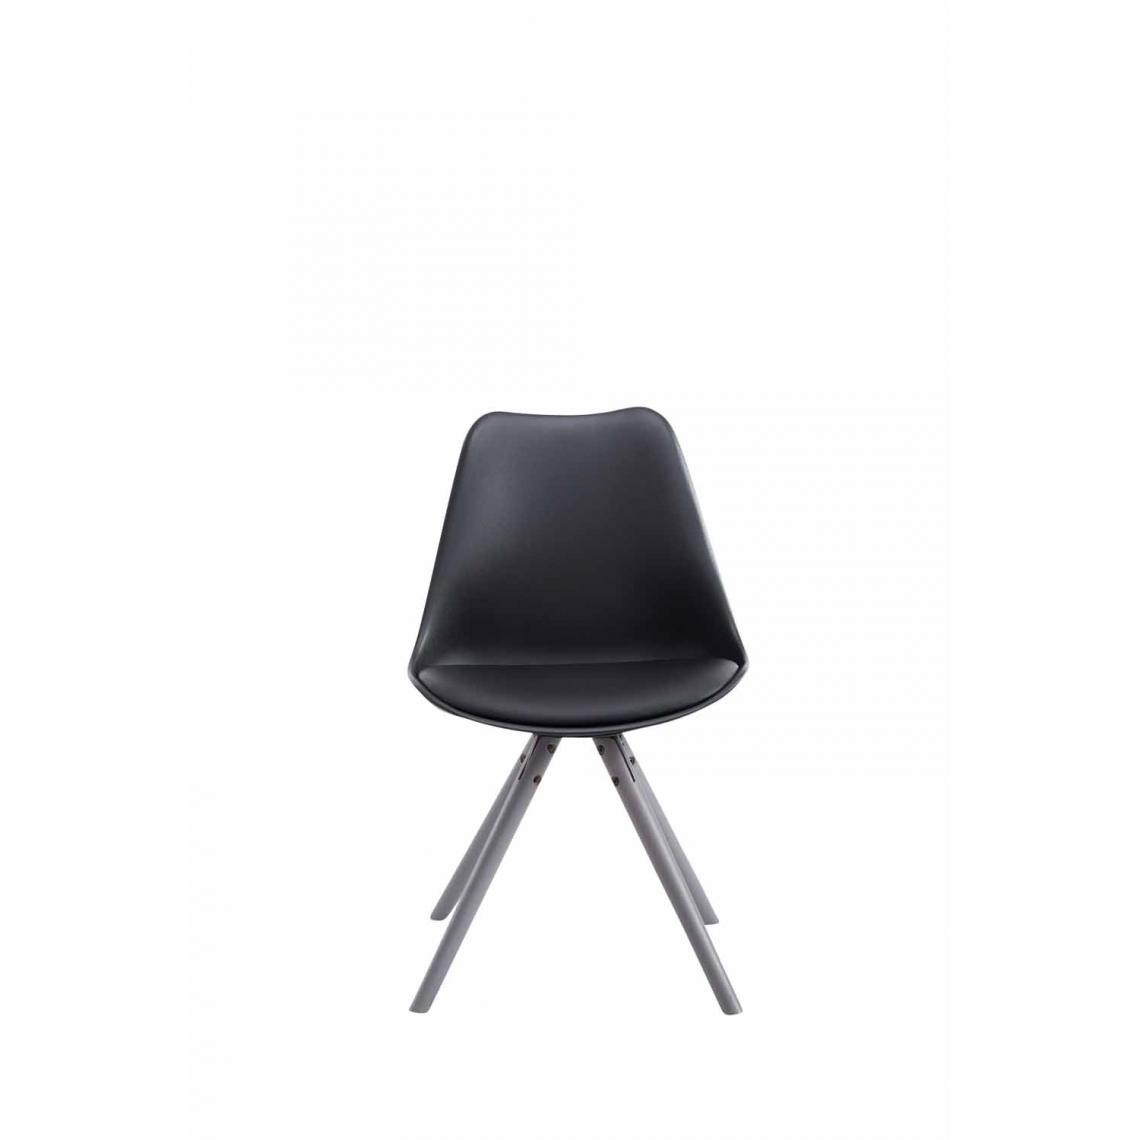 Icaverne - Esthetique Chaise visiteur collection Katmandou cuir synthétique rond gris couleur noir - Chaises